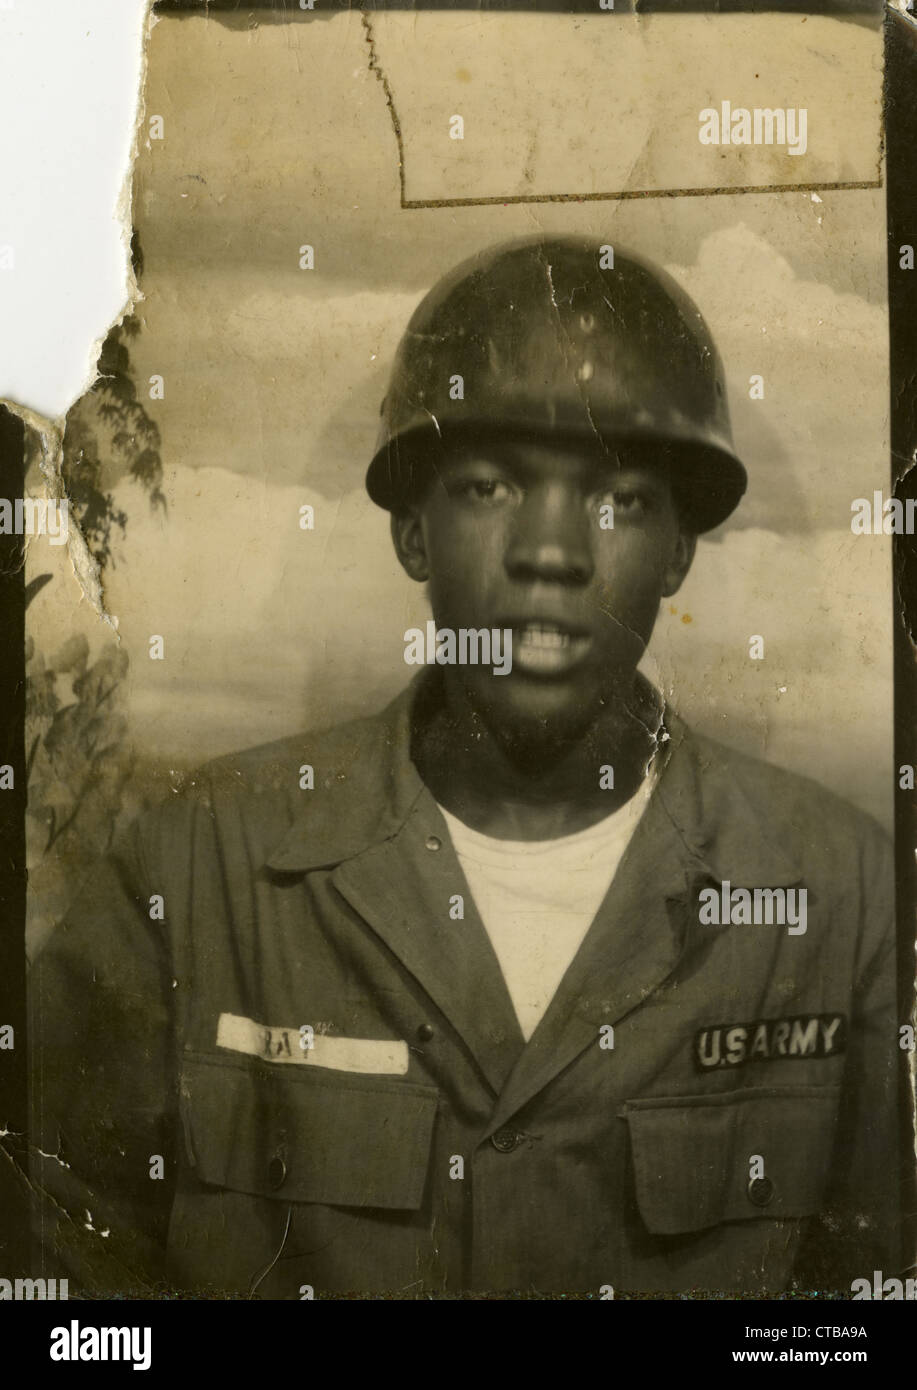 Leroy Ray negro soldado del ejército de los Estados Unidos Guerra de Vietnam headshot mug shot Foto de stock